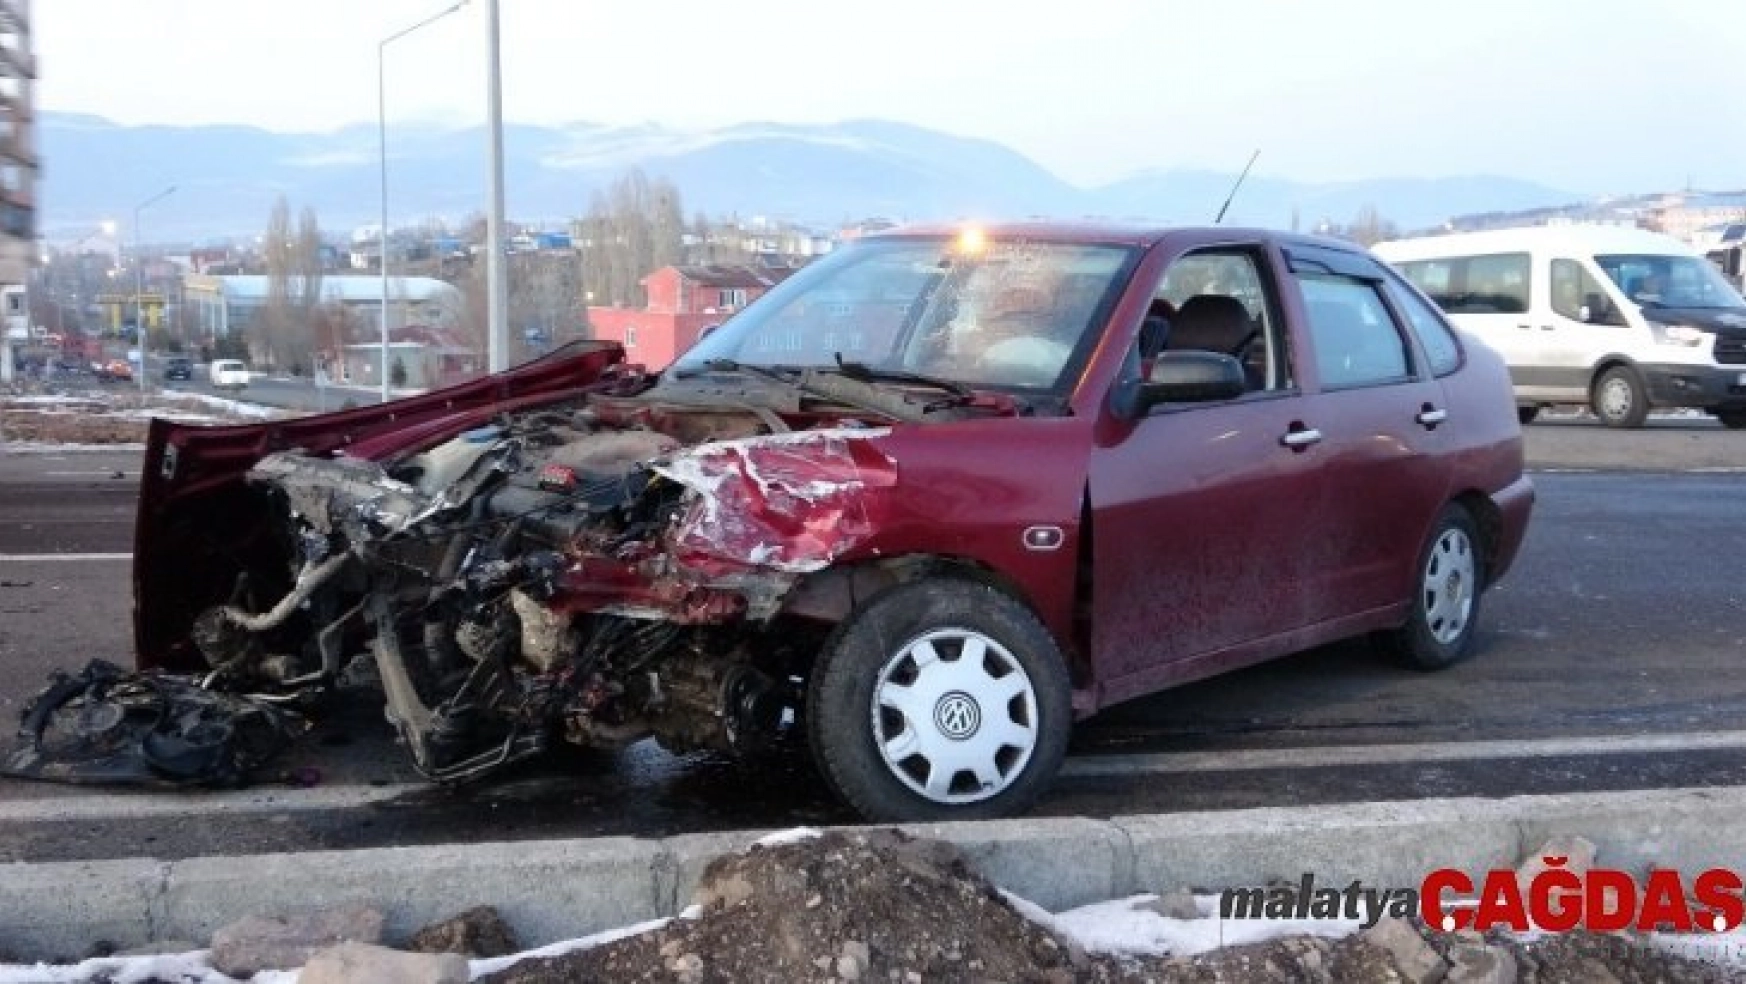 Ardahan'da trafik kazası: 4 yaralı